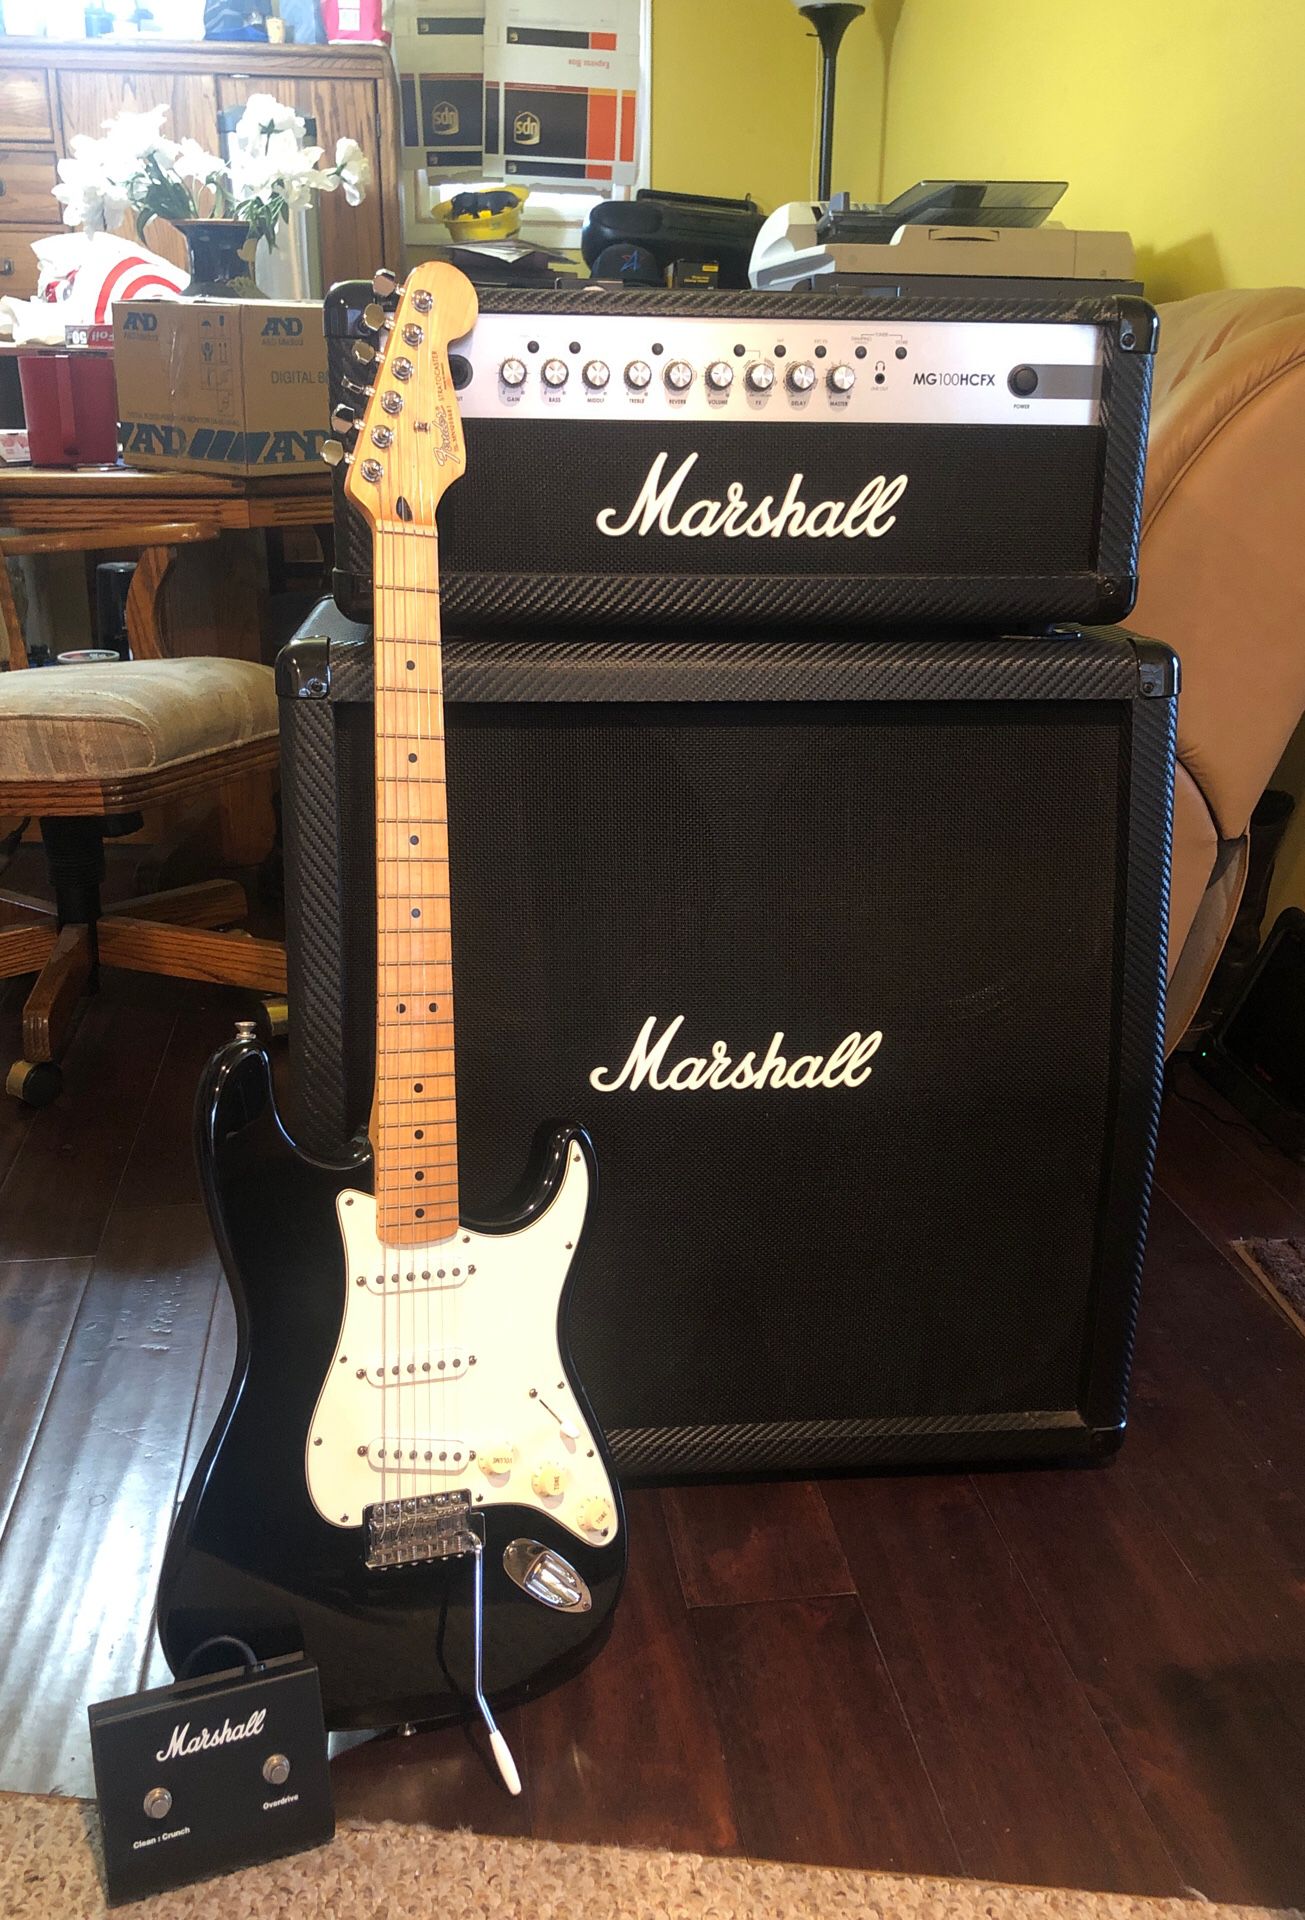 Fender Stratocaster & Marshall Amp & Speaker